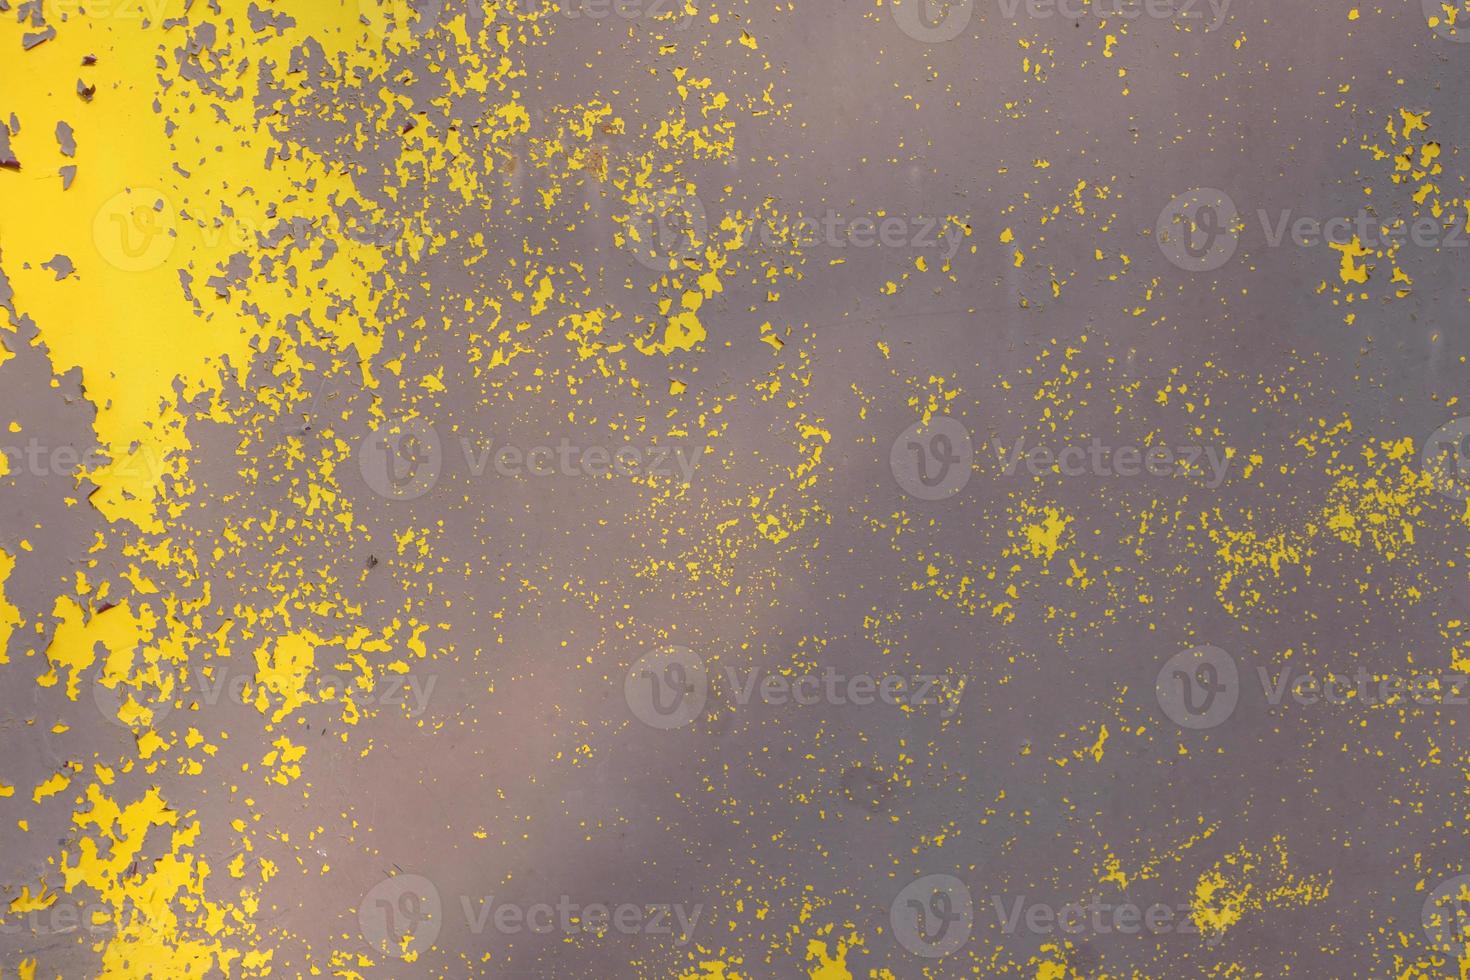 vieja pared de metal grungy amarillo con pintura descascarada y manchas oxidadas, textura fotográfica de fondo industrial foto